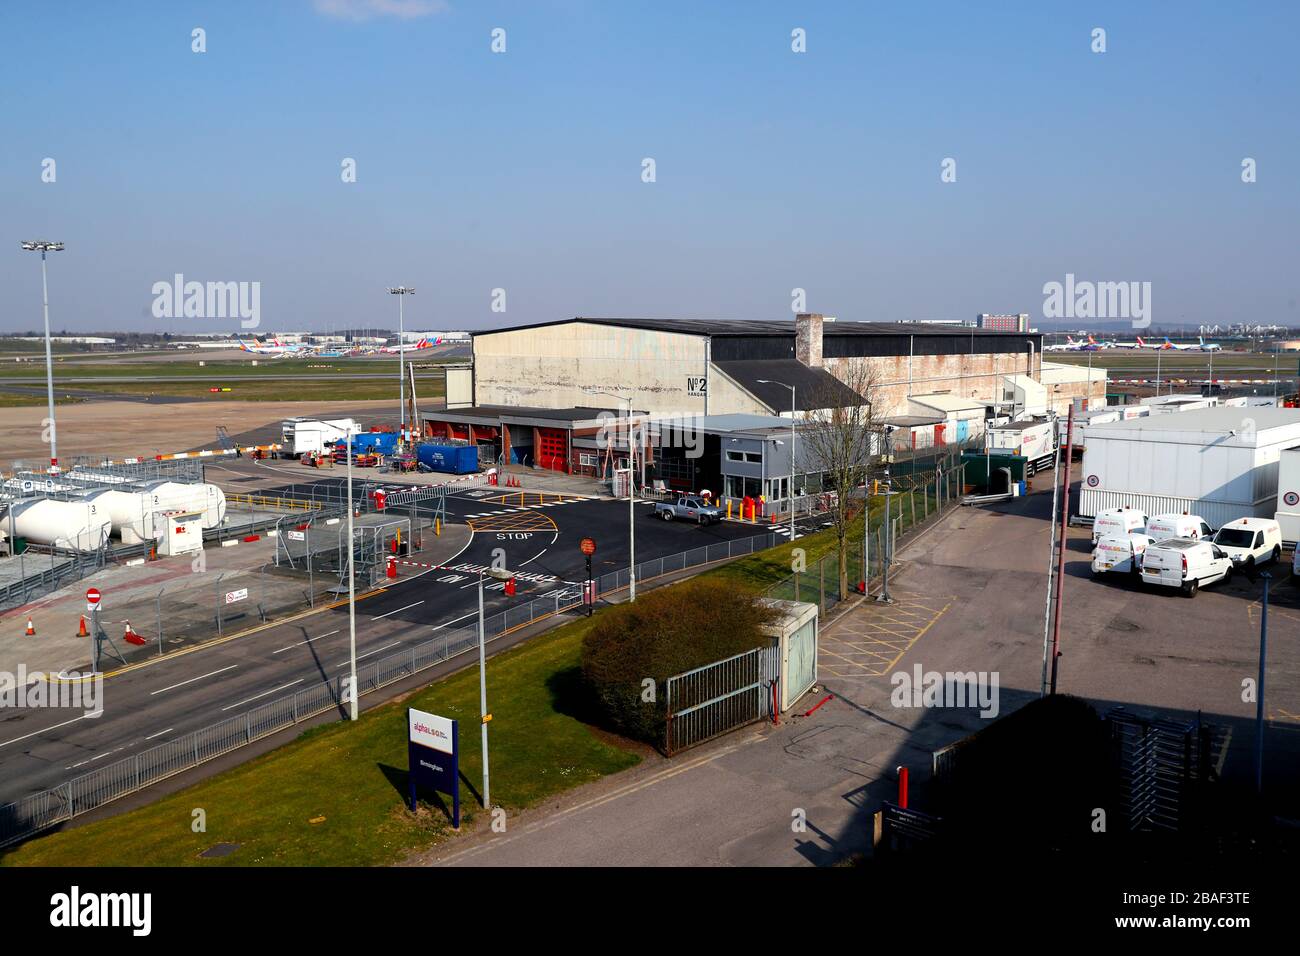 Una visione generale dell'Hangar 2 all'aeroporto di Birmingham, come sono stati tenuti colloqui circa la creazione di un mortuario temporaneo all'aeroporto con spazio per fino a 12,000 corpi in uno scenario peggiore in mezzo al focolaio Covid-19. Foto Stock